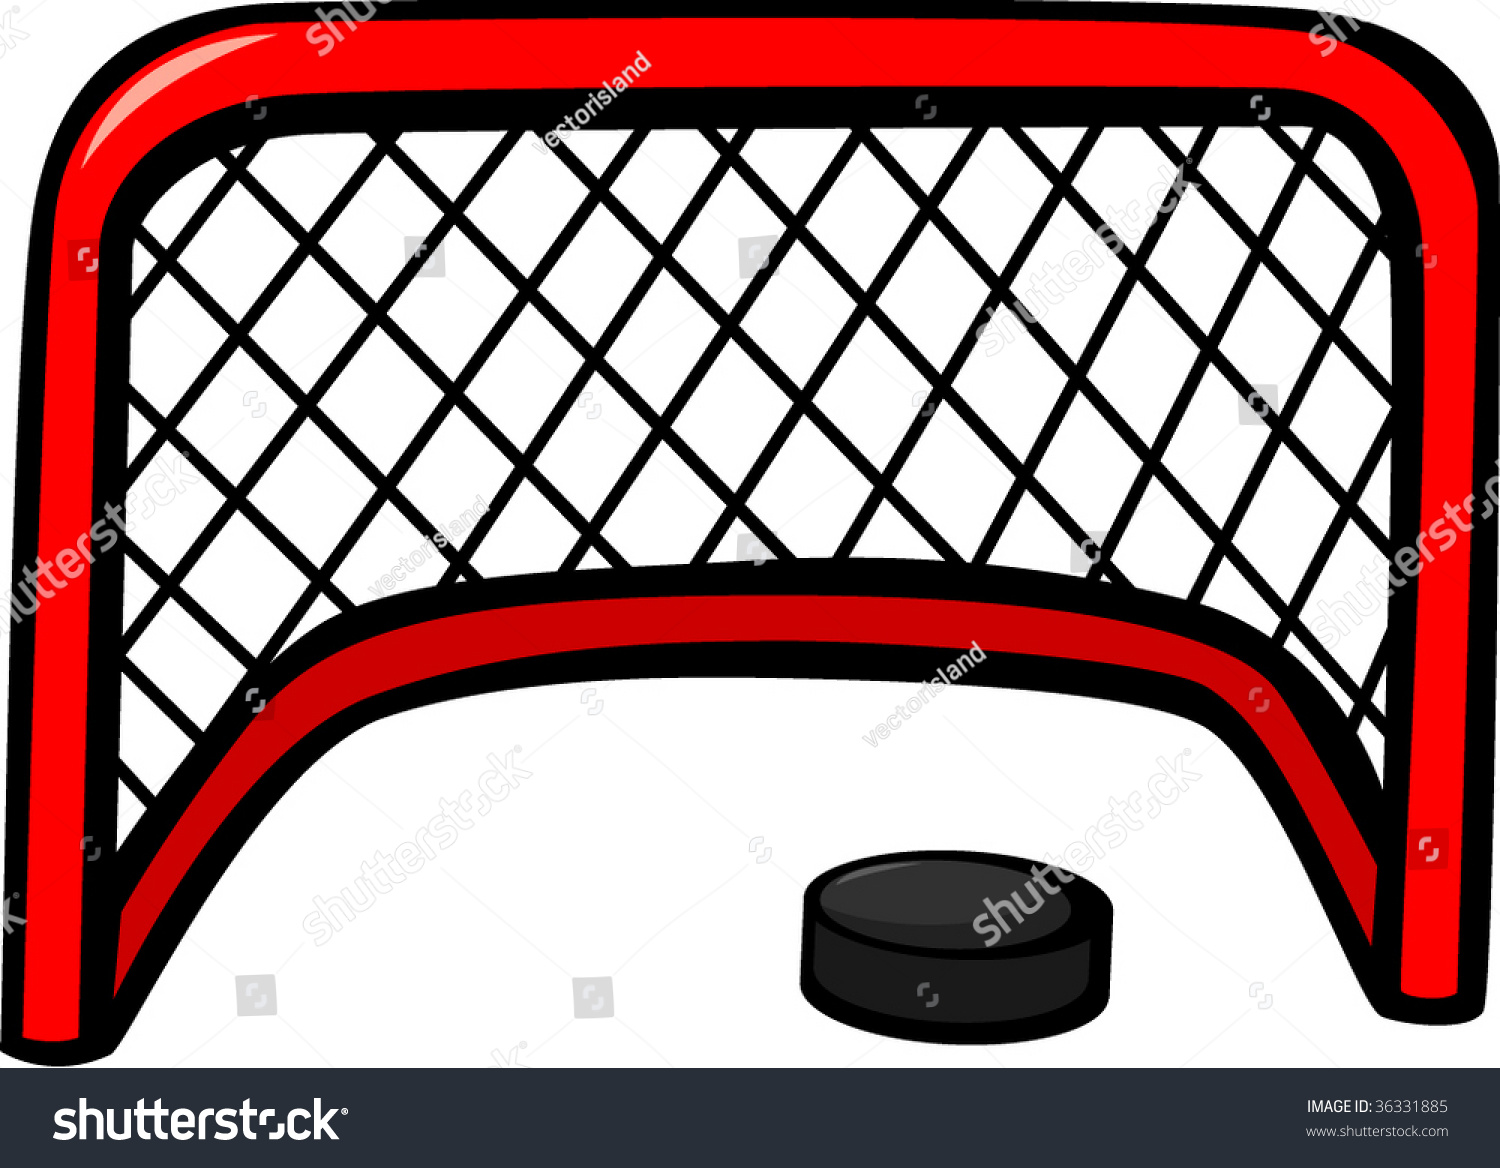 Ice Hockey Goal Net Puck: стоковые изображения в HD и миллионы других стоко...